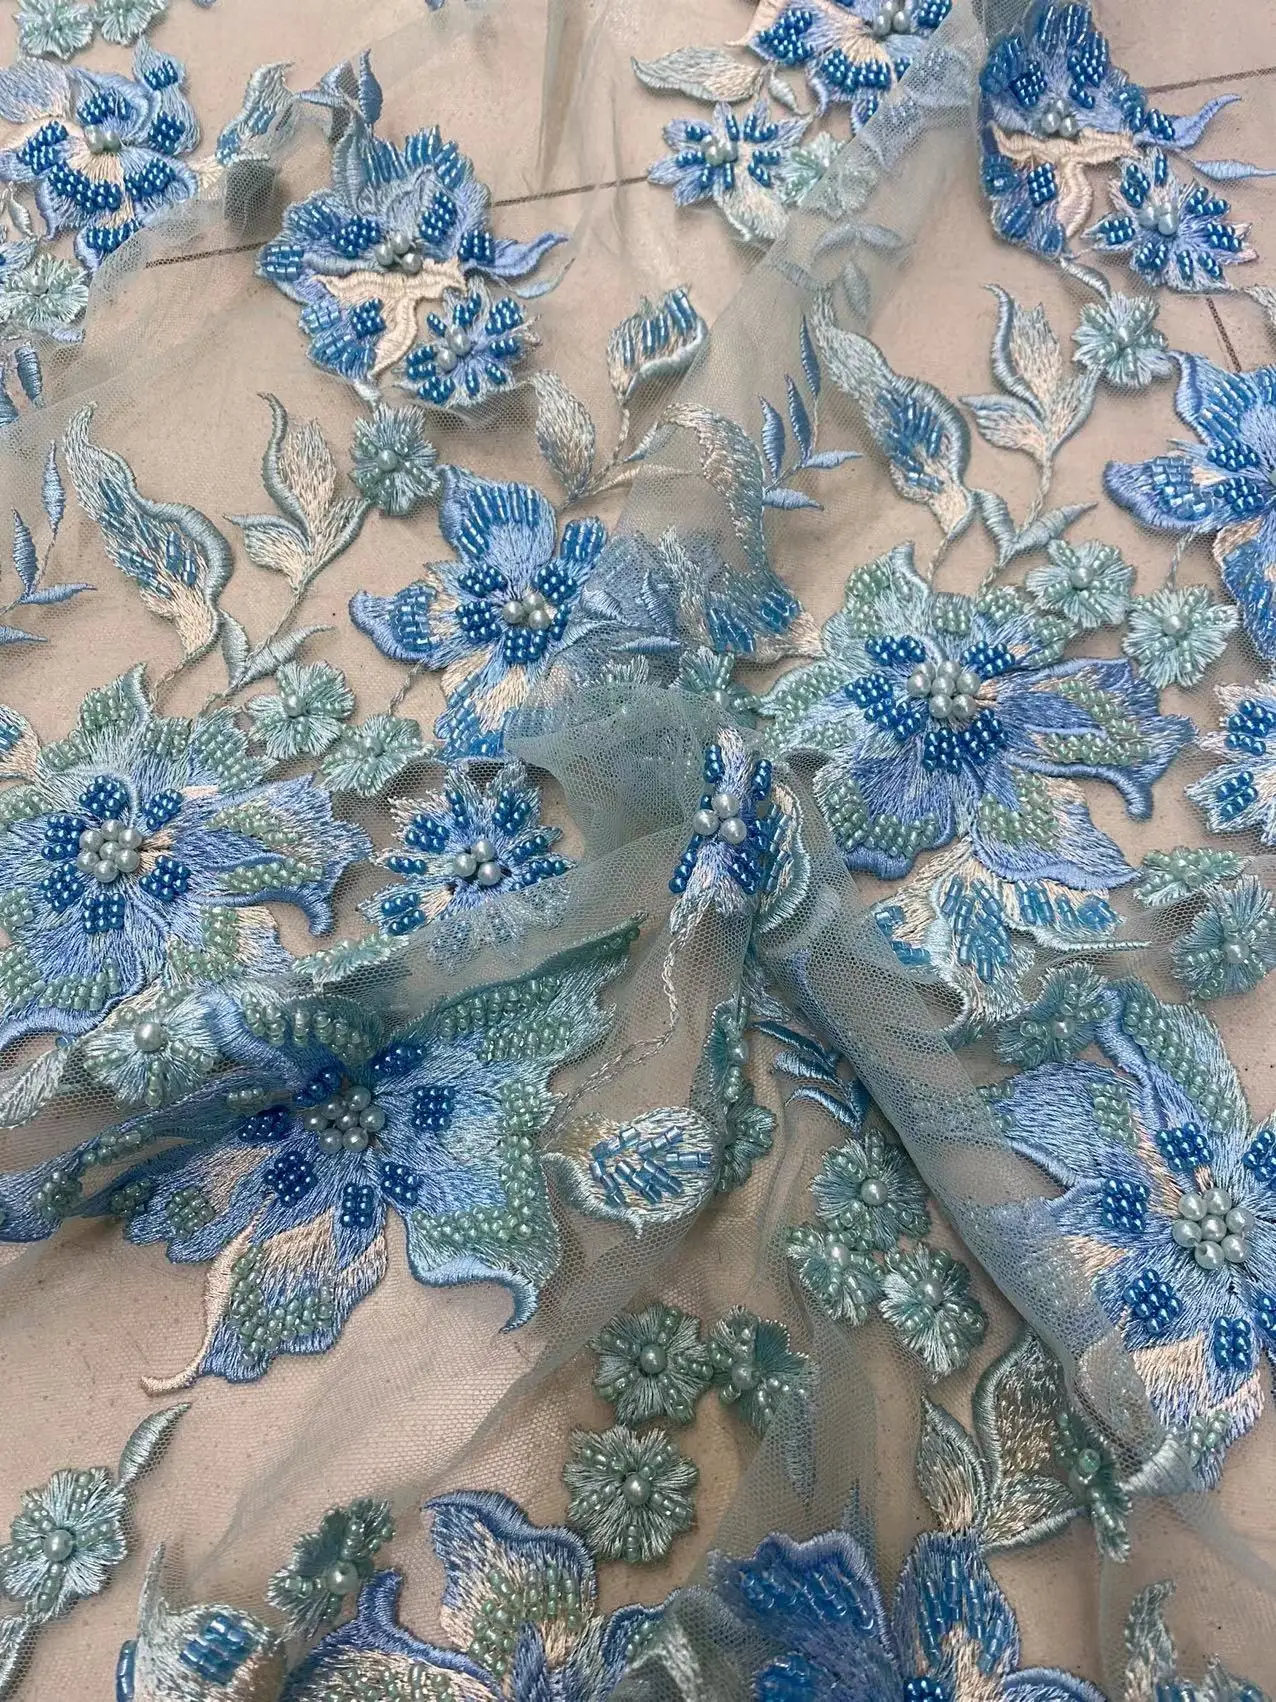 2023 qualidade superior feito à mão tecido requintado pérolas bordado francês malha fio africano grânulo rendas para vestidos de festa casamentos